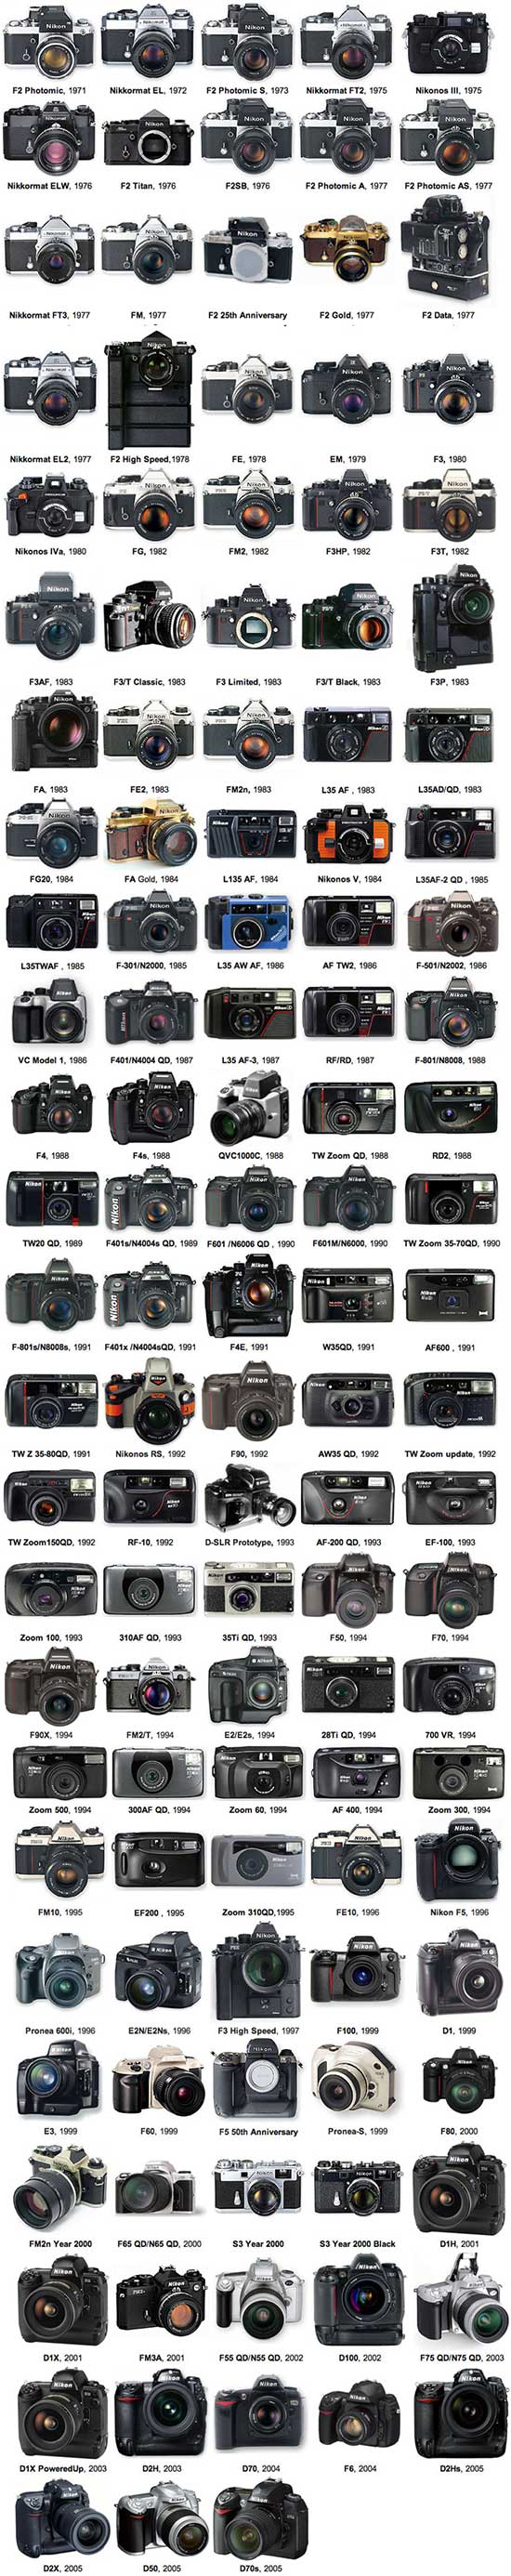 Nikon-camera-history2